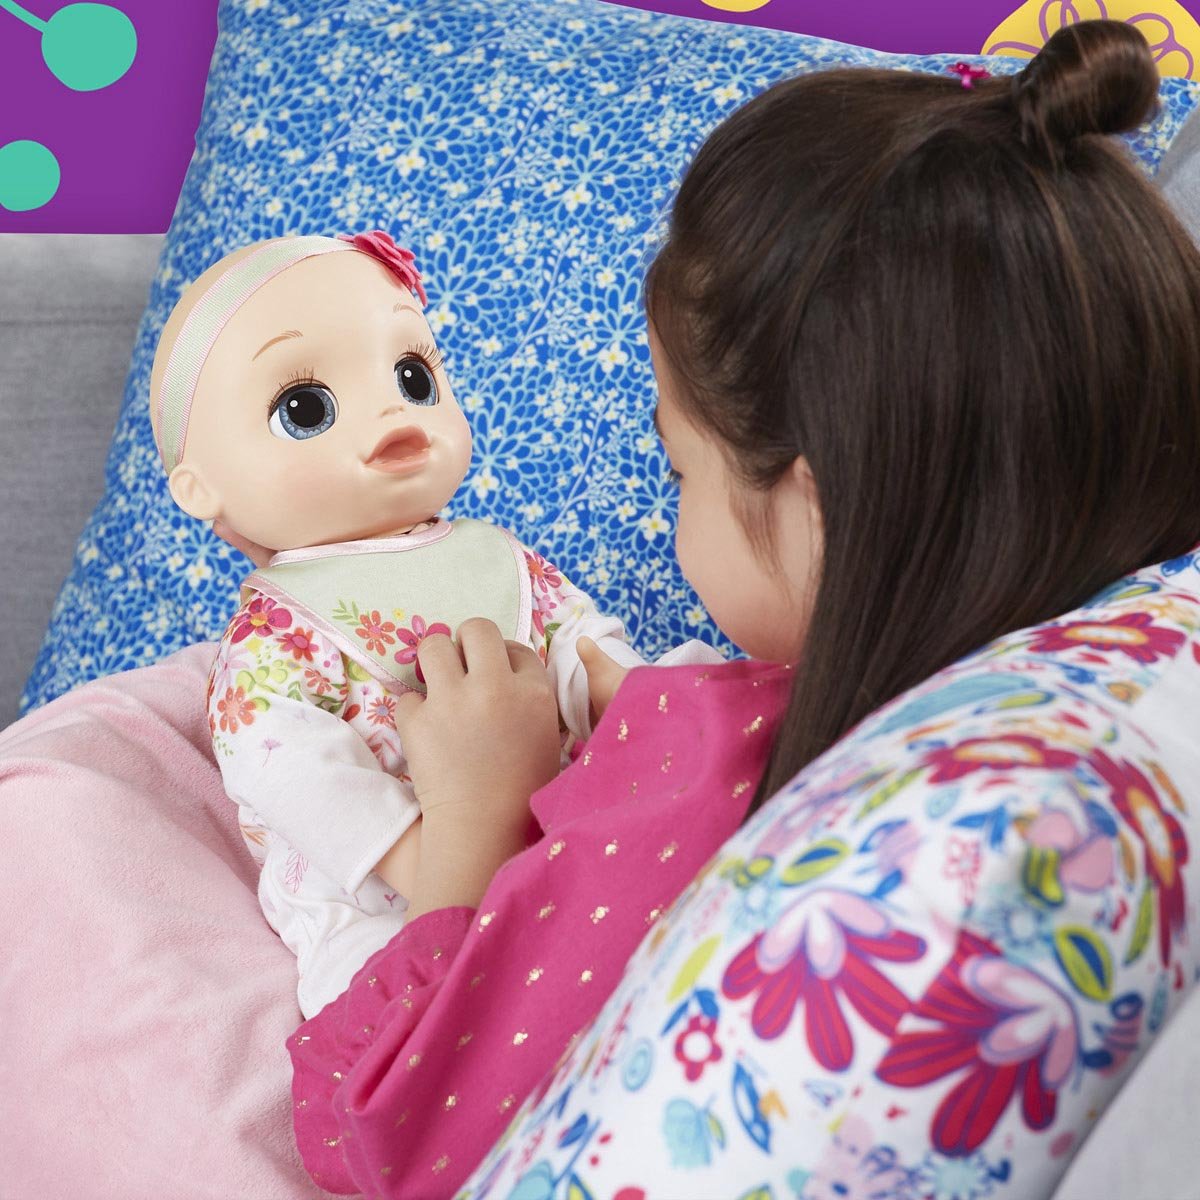 Baby Alive Mi bebita de verdad: Realista muñeca bebé morena con